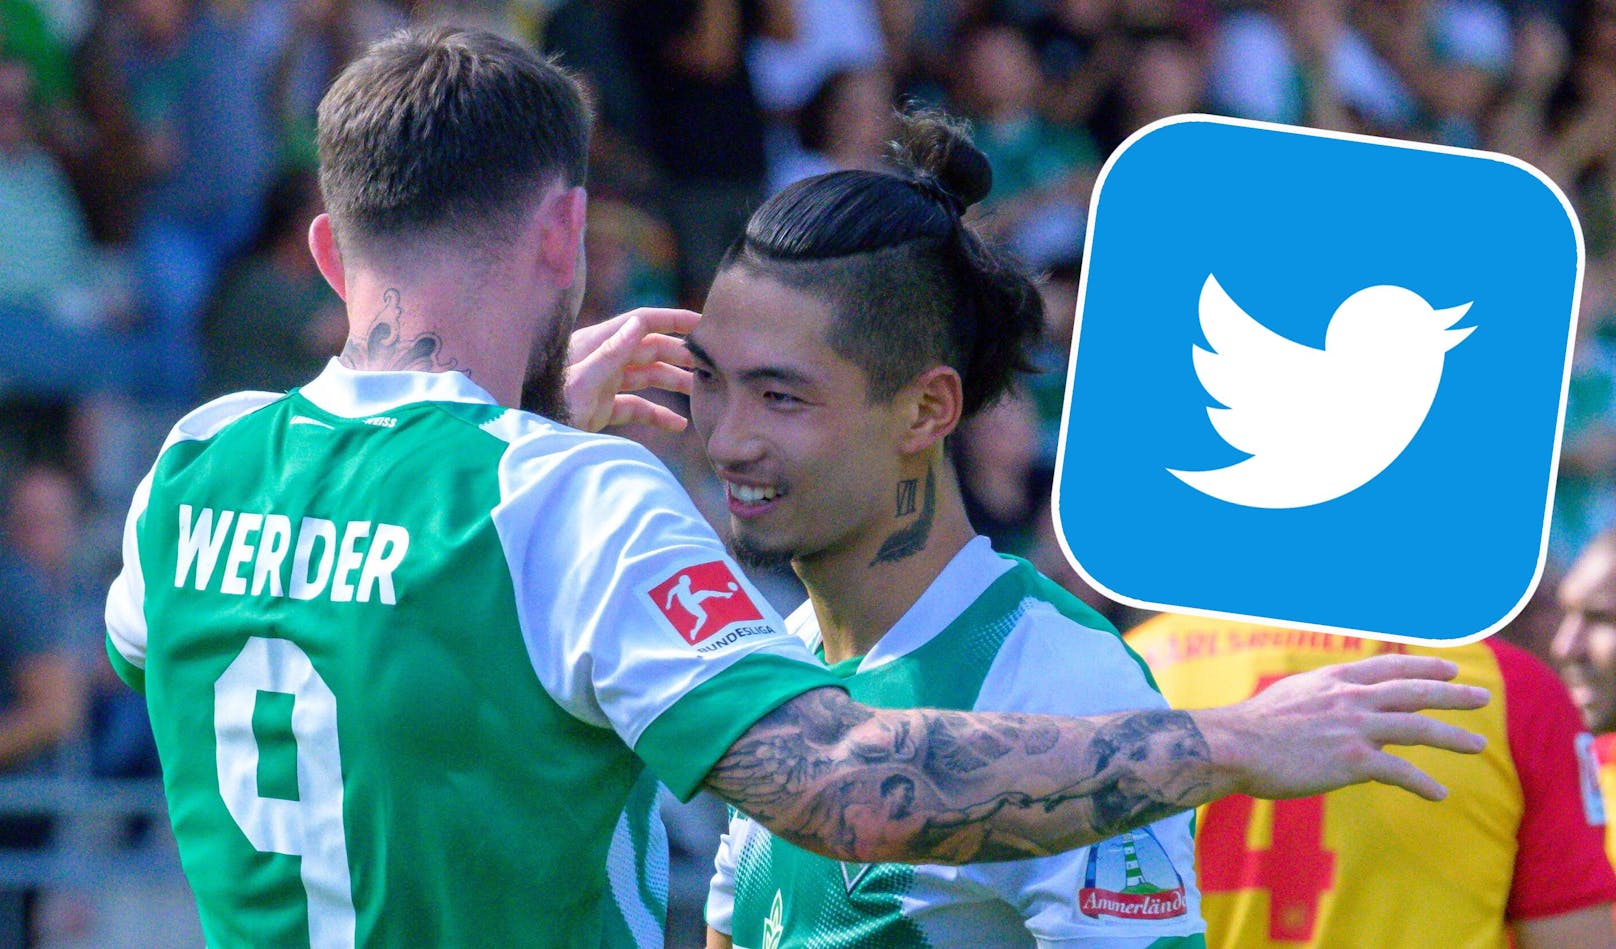 Die FPÖ zieht ihre Twitter-Klage gegen Werder Bremen zurück